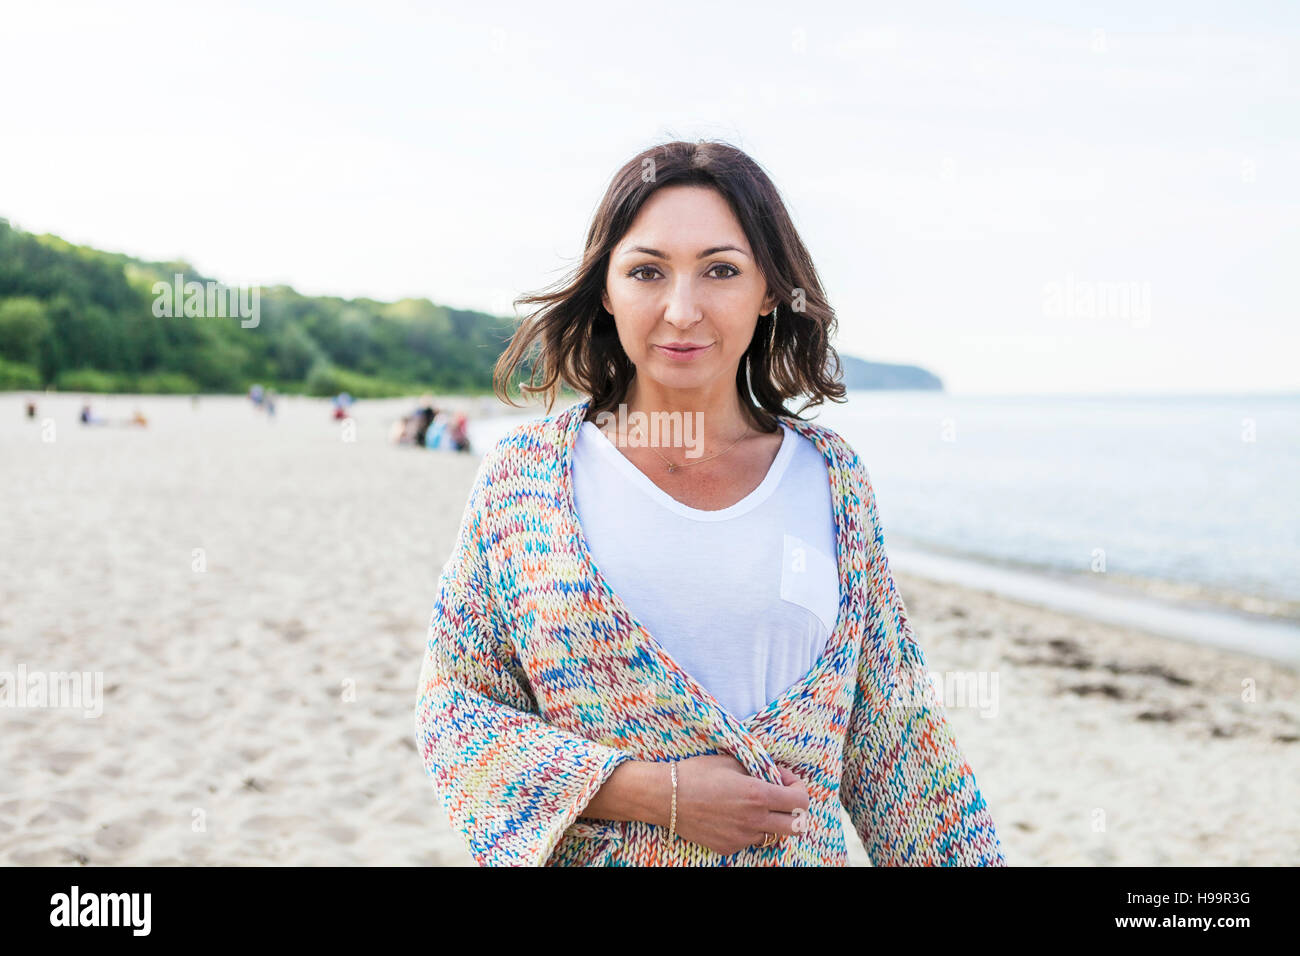 Ritratto di donna con capelli castani sulla spiaggia Foto Stock